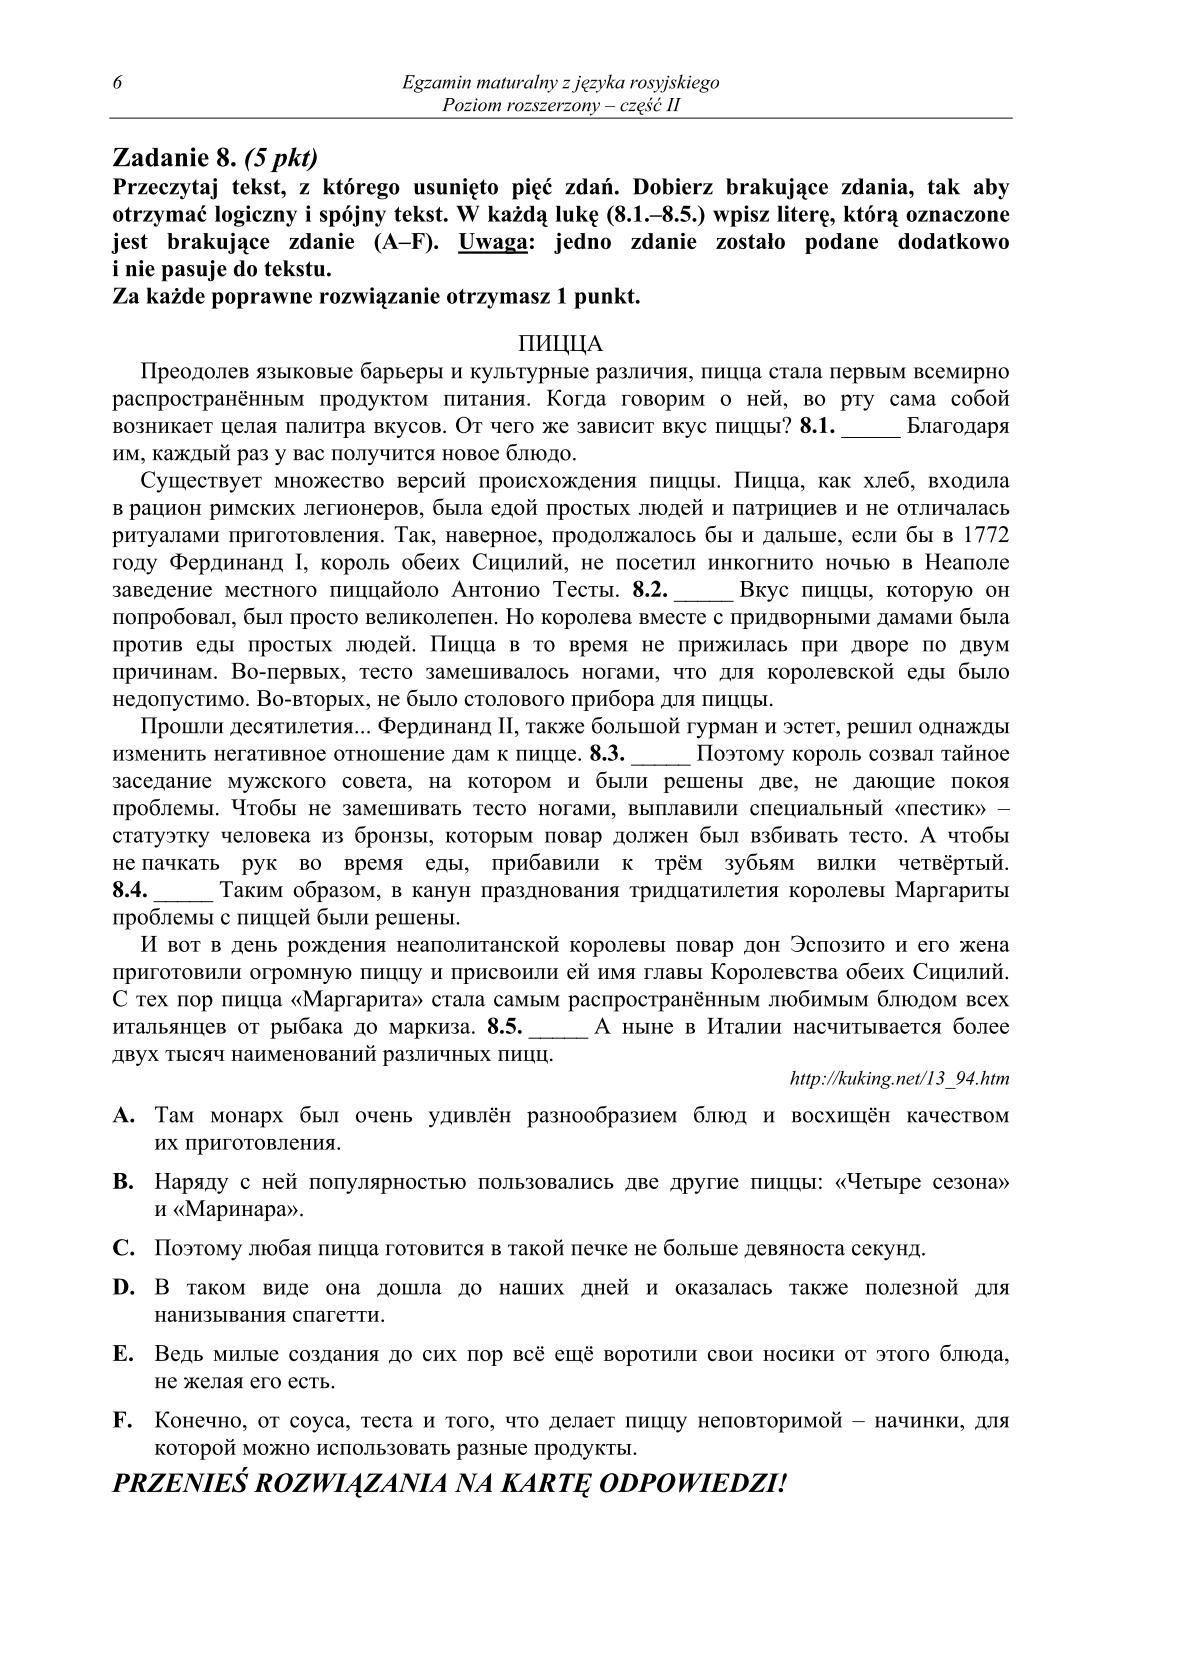 pytania-rosyjski-poziom-rozszerzony-czesc-II-matura-2014-str.6